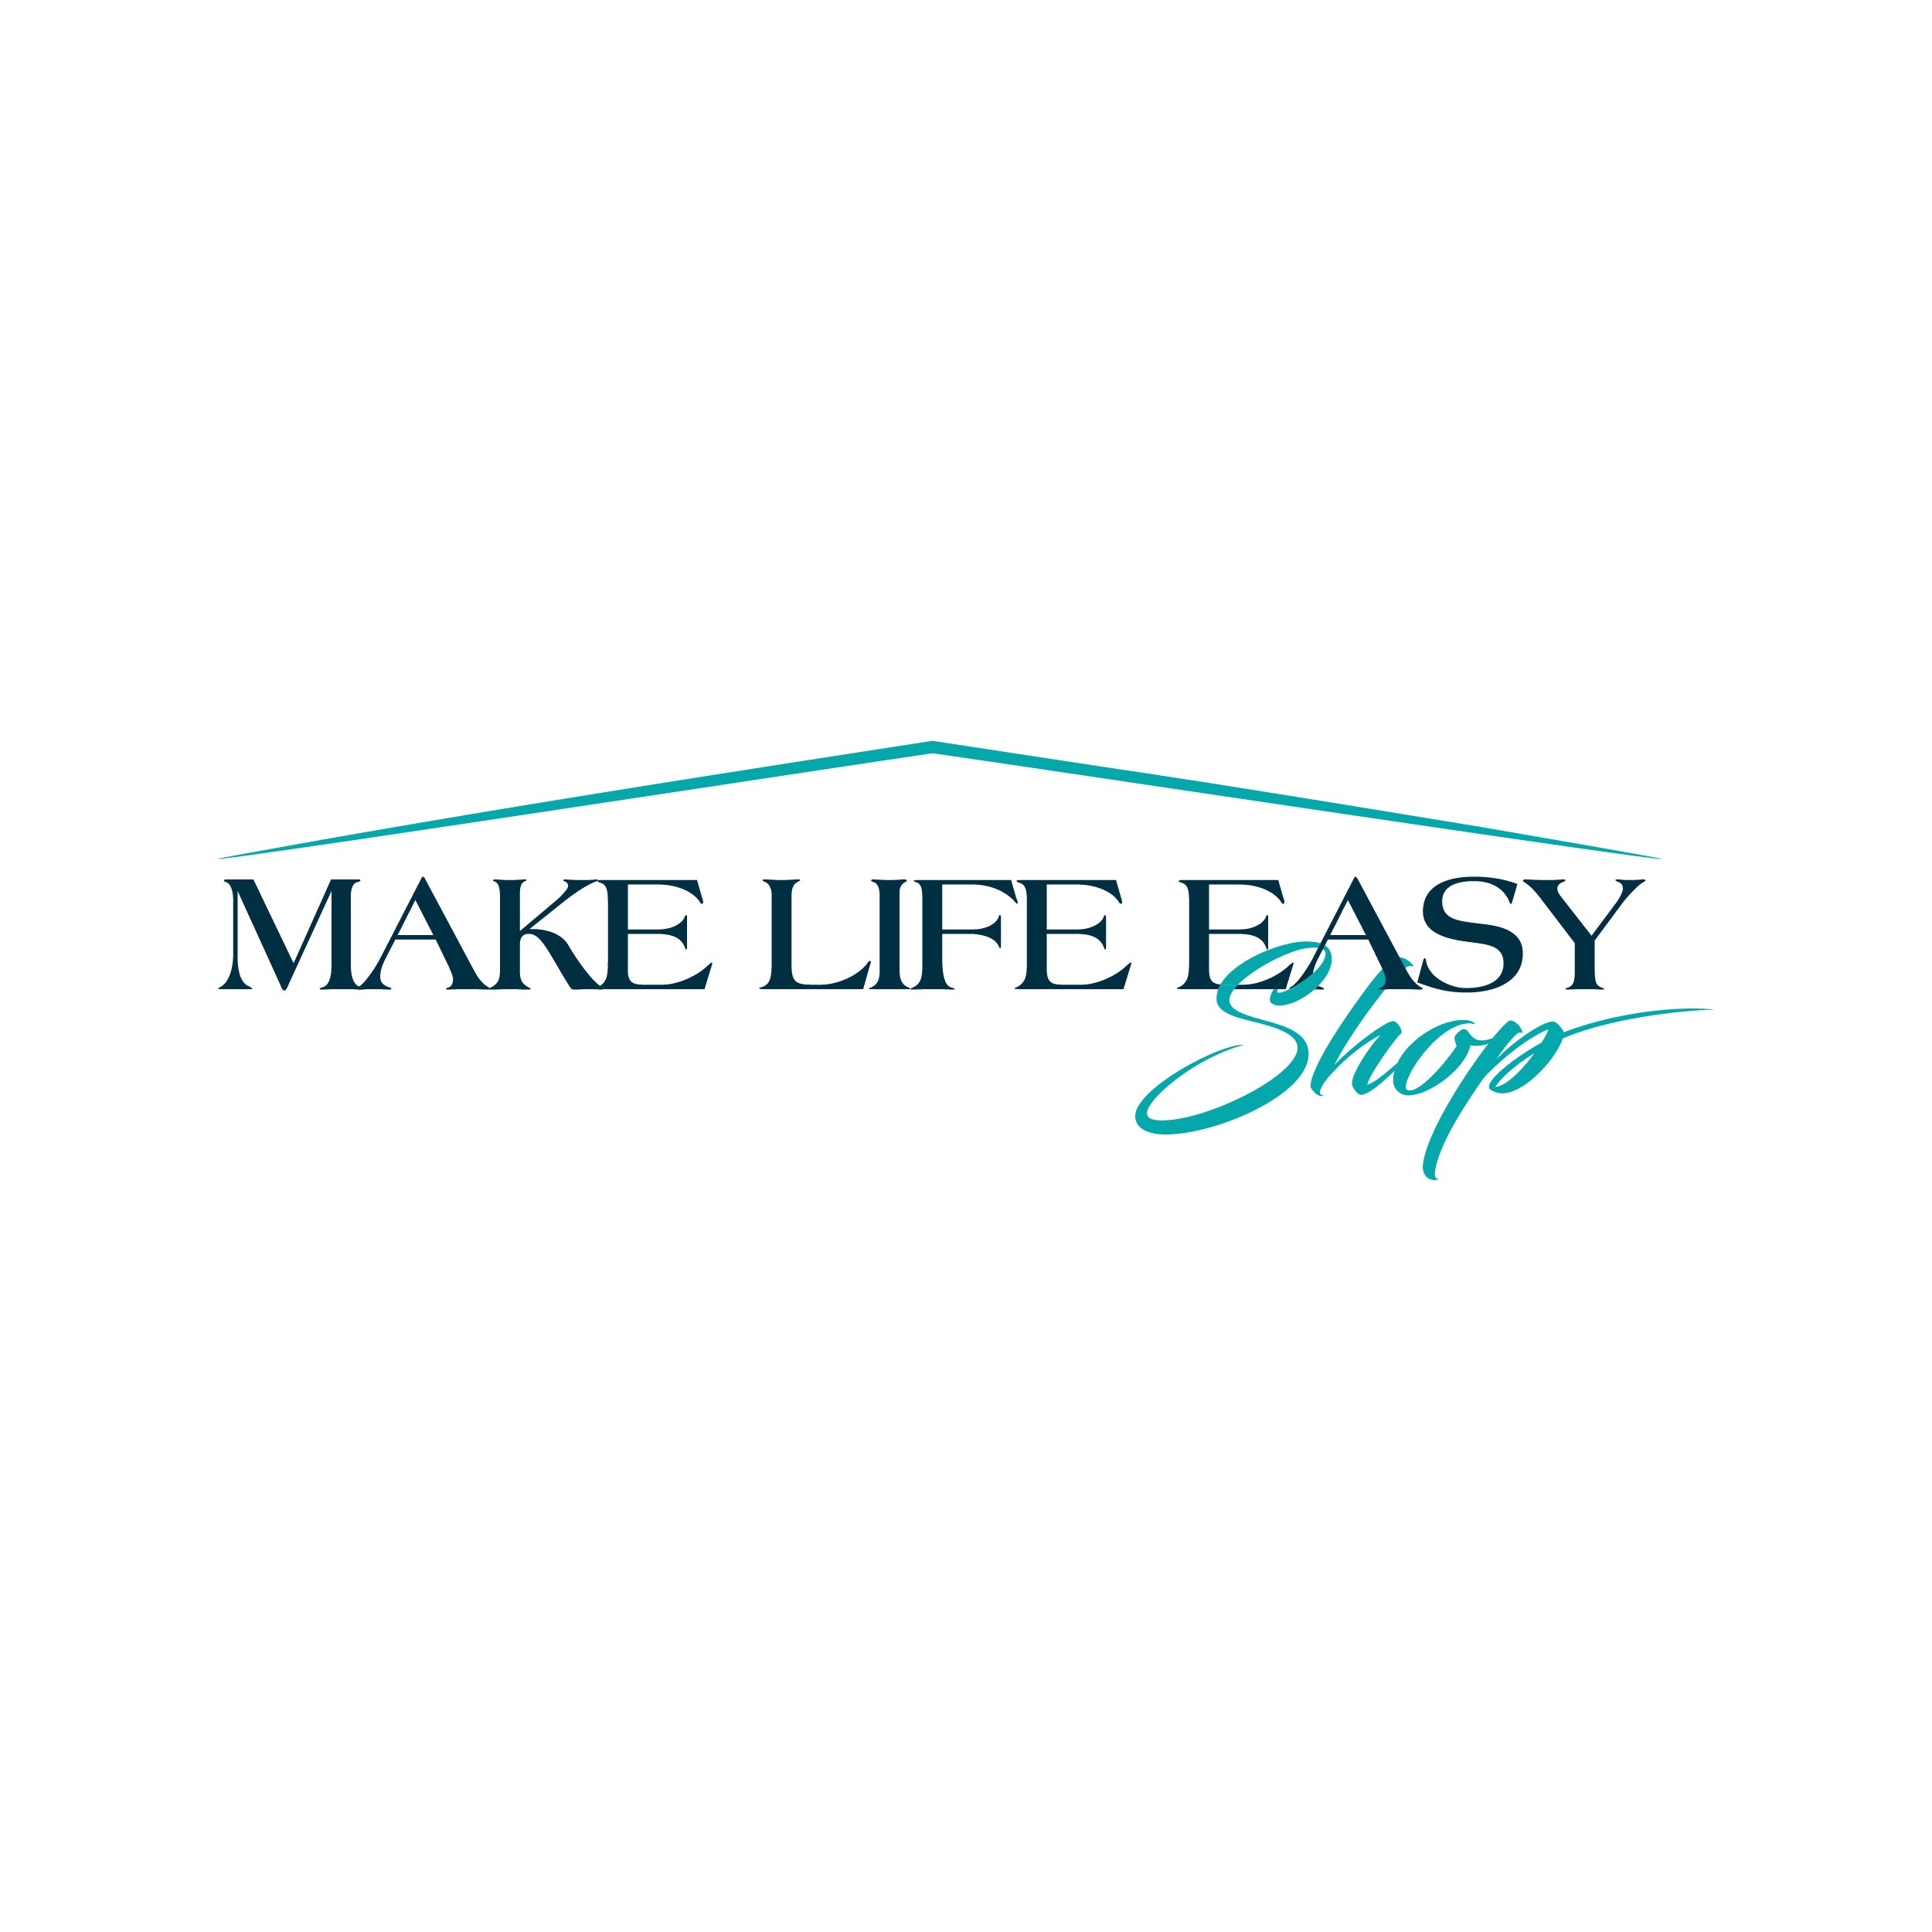 Make life easier